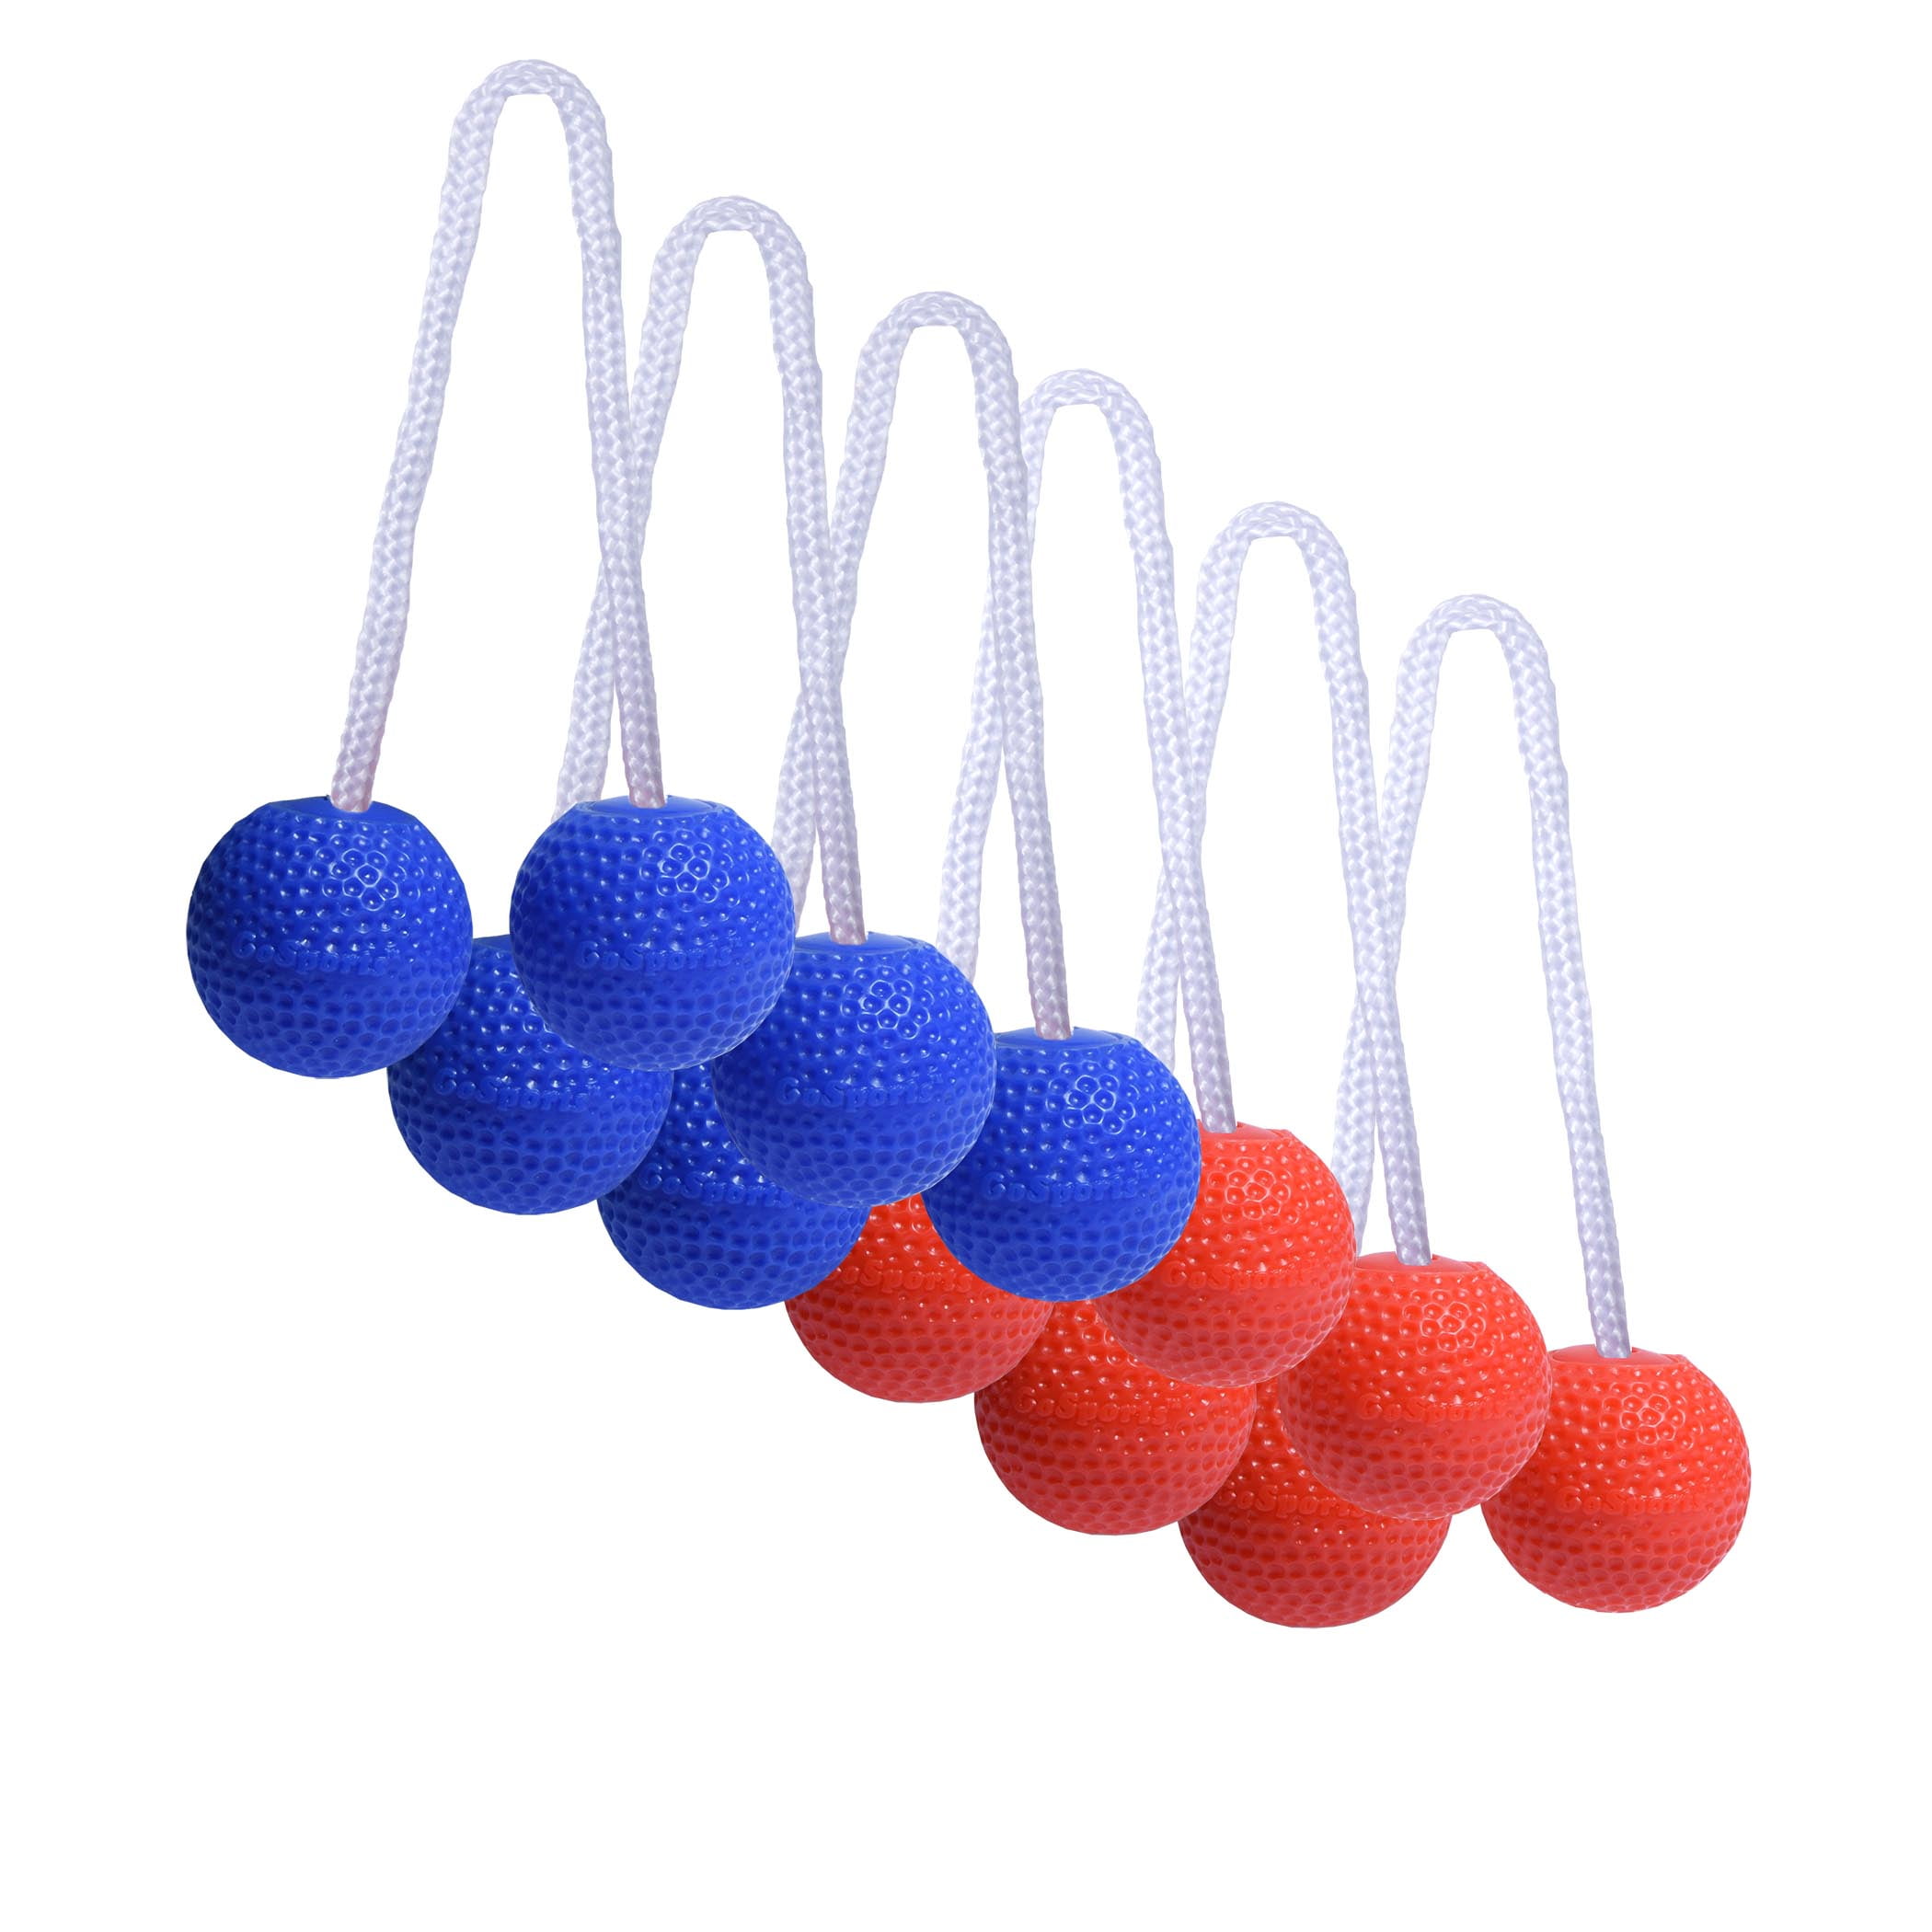 Ladder Ball Toss Game Family Outdoor Reemplazo de bolas de escalera Bolos Bolas 